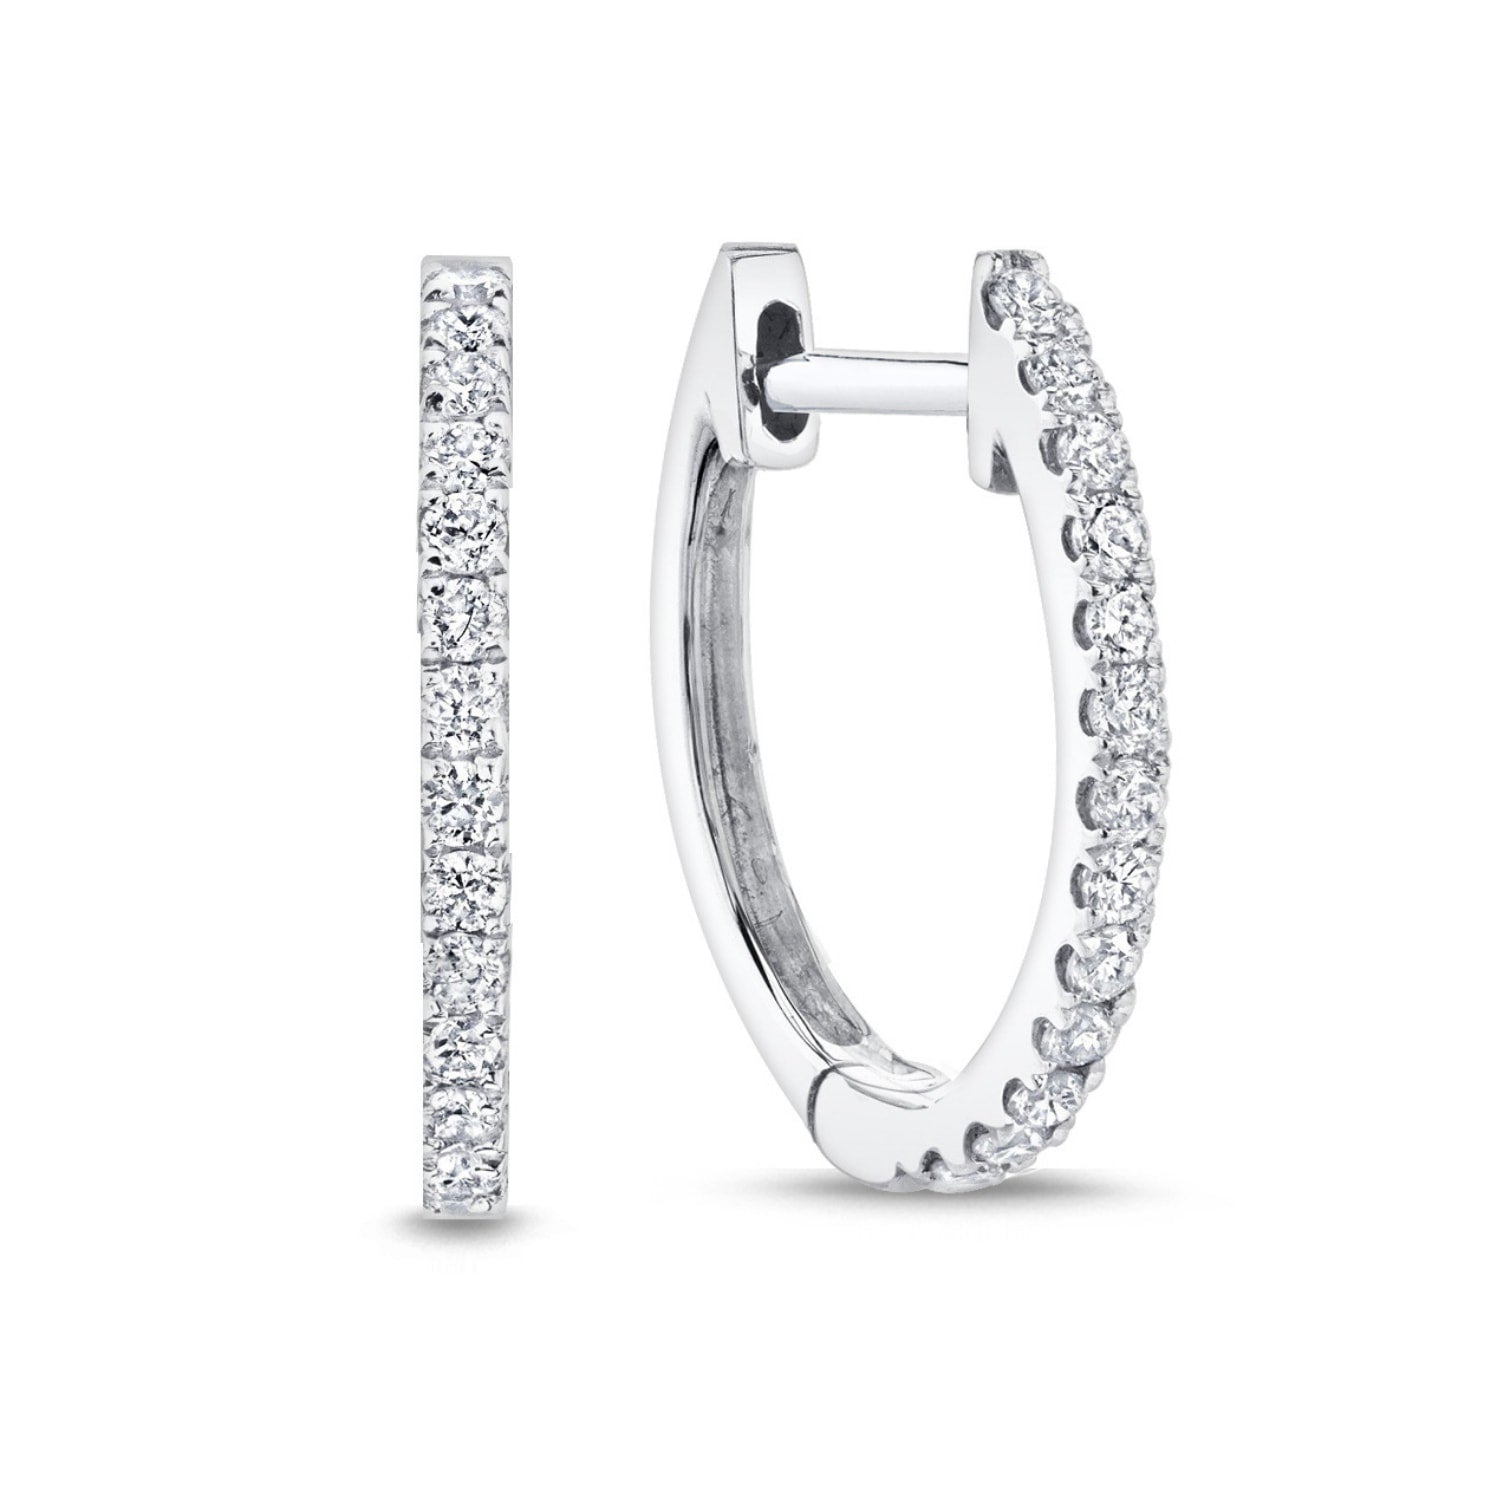 Eleonore Medium Hoop Diamond Earrings in 18k White Gold Vermeil